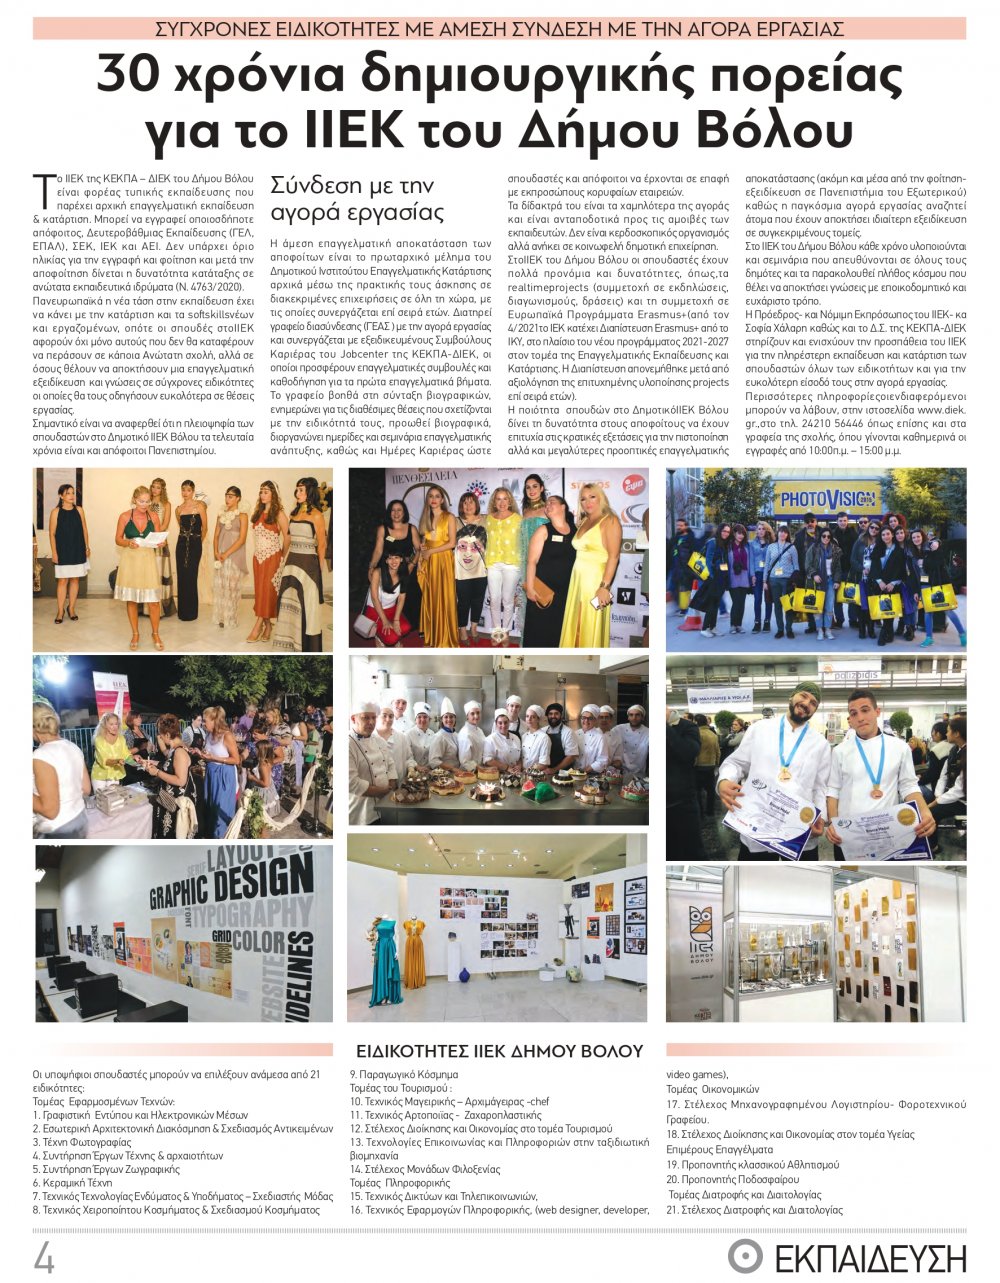 Παρουσίαση του ΙΙΕΚ Δήμου Βόλου στο Ένθετο για την Εκπαίδευση, της εφημερίδας Θεσσαλία